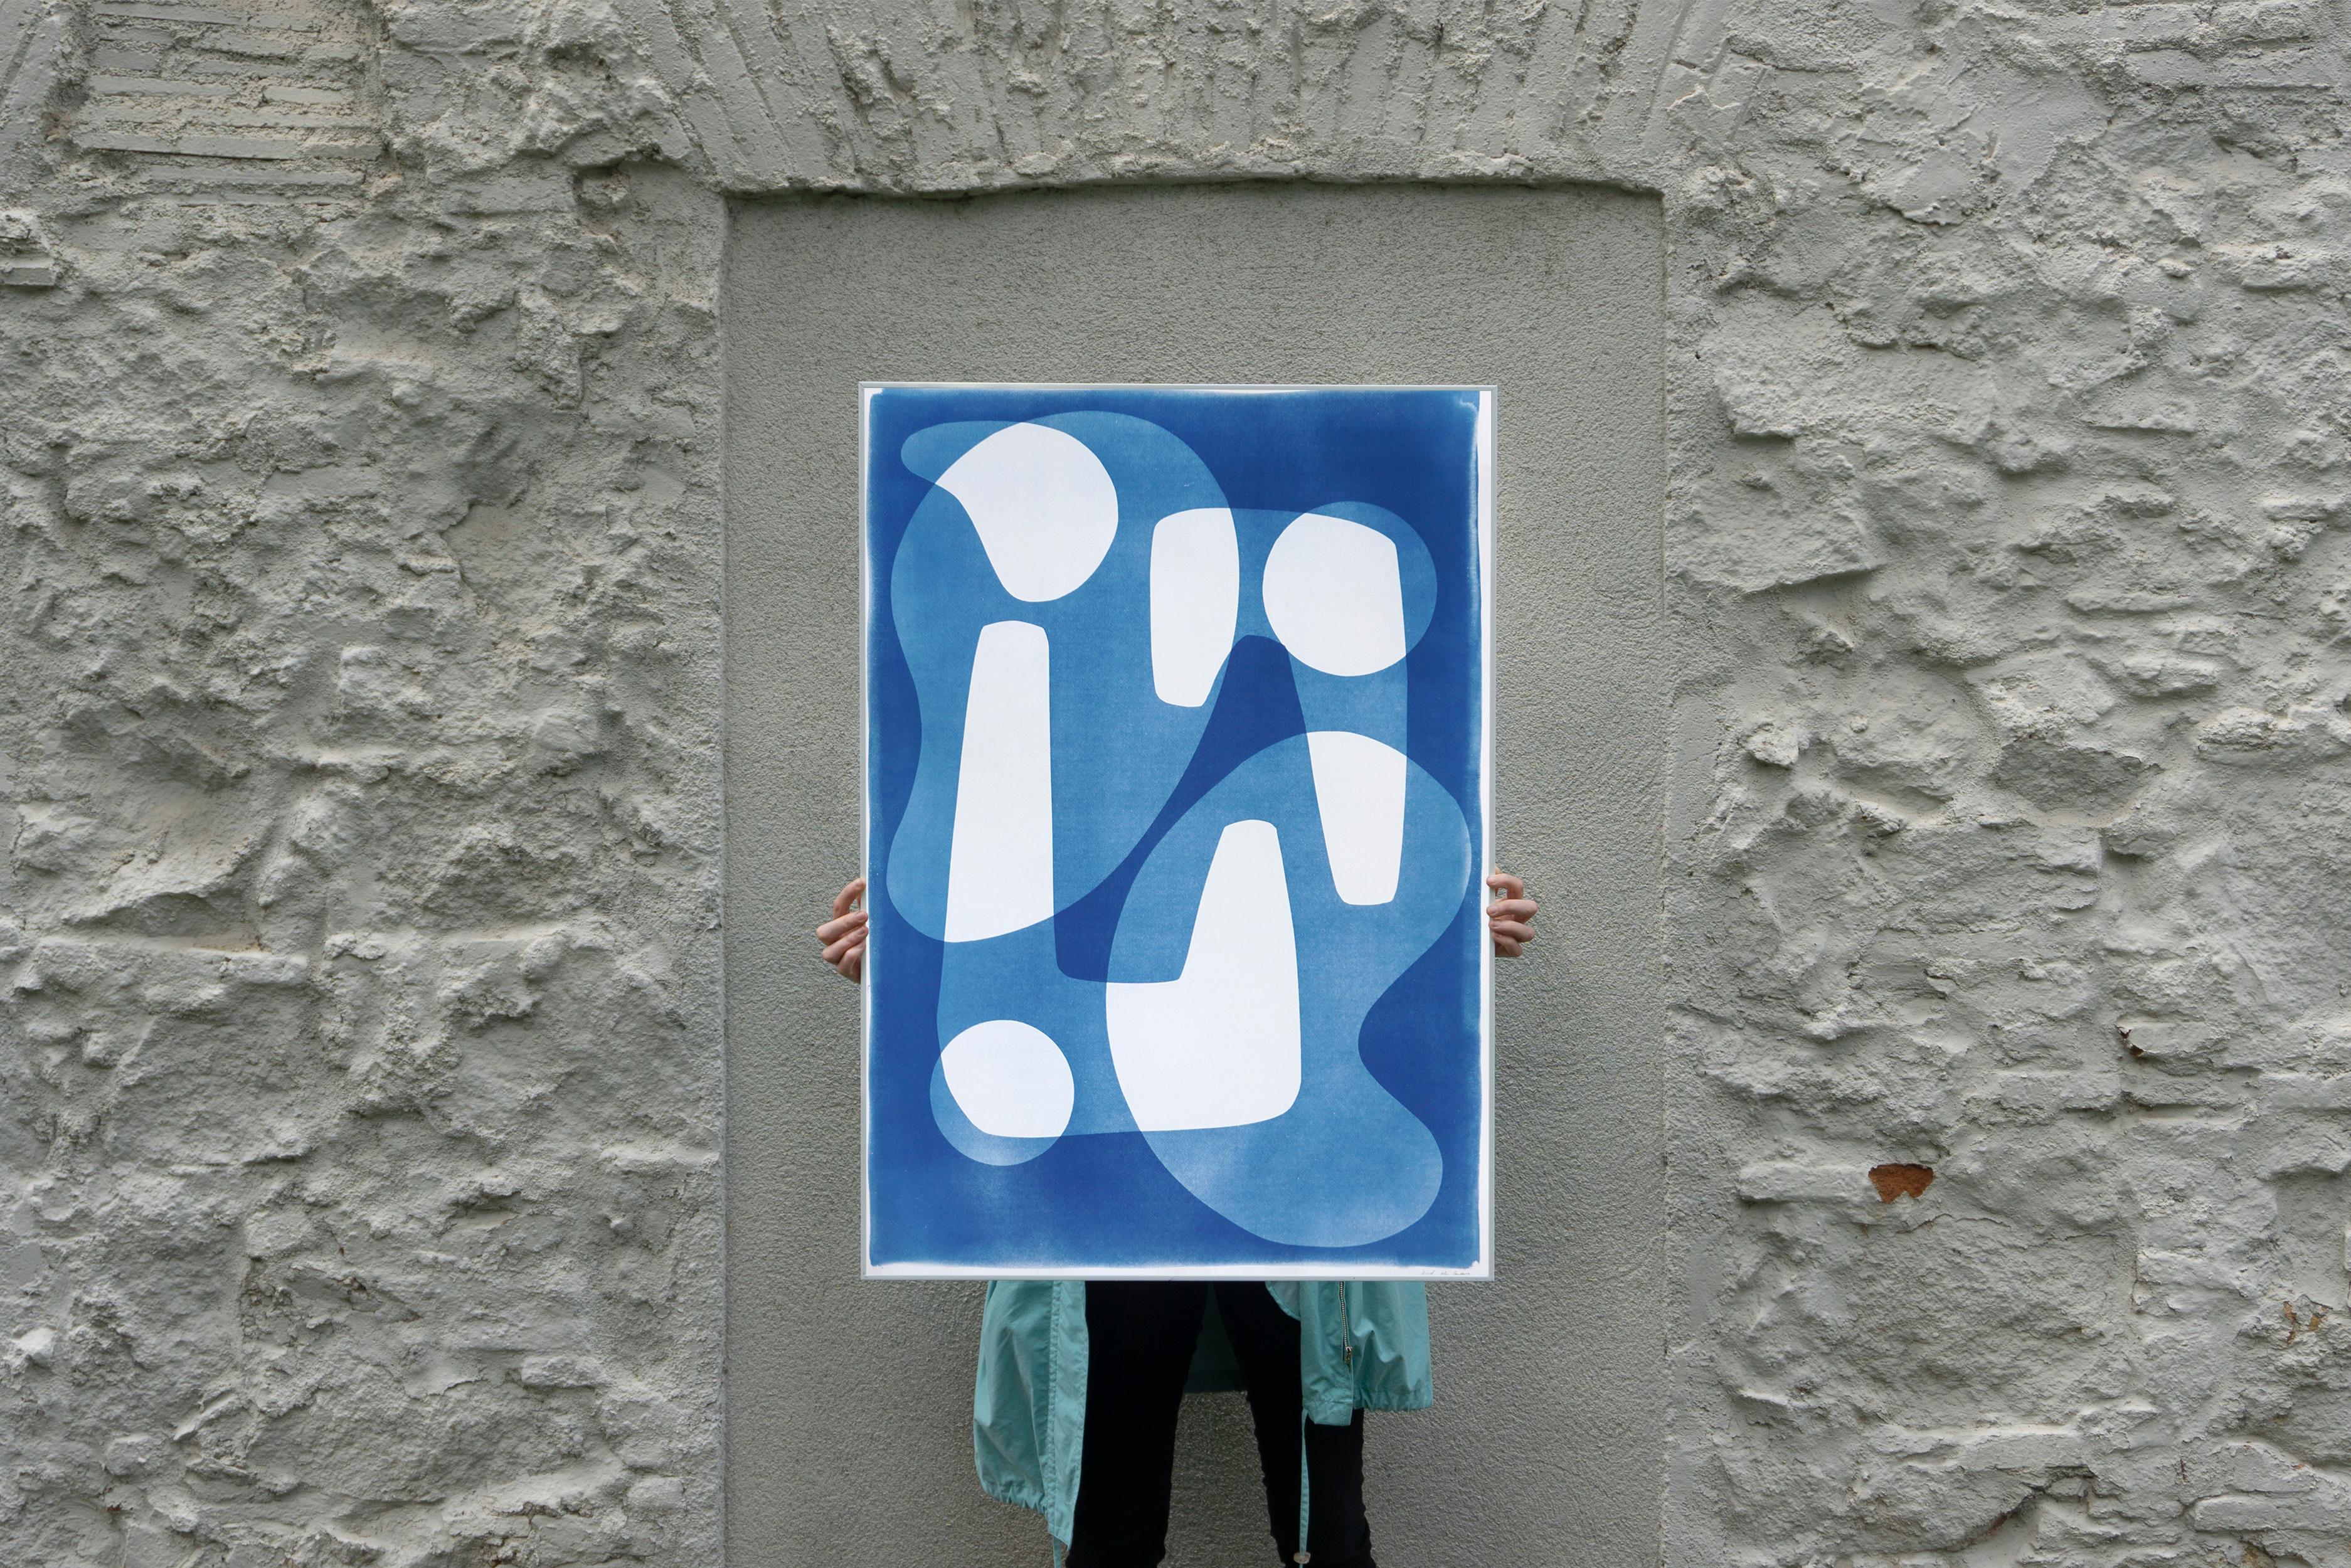 Formes modernes et uniques de style Jetsons blanches et bleues, cyanotype fait à la main - Photograph de Kind of Cyan